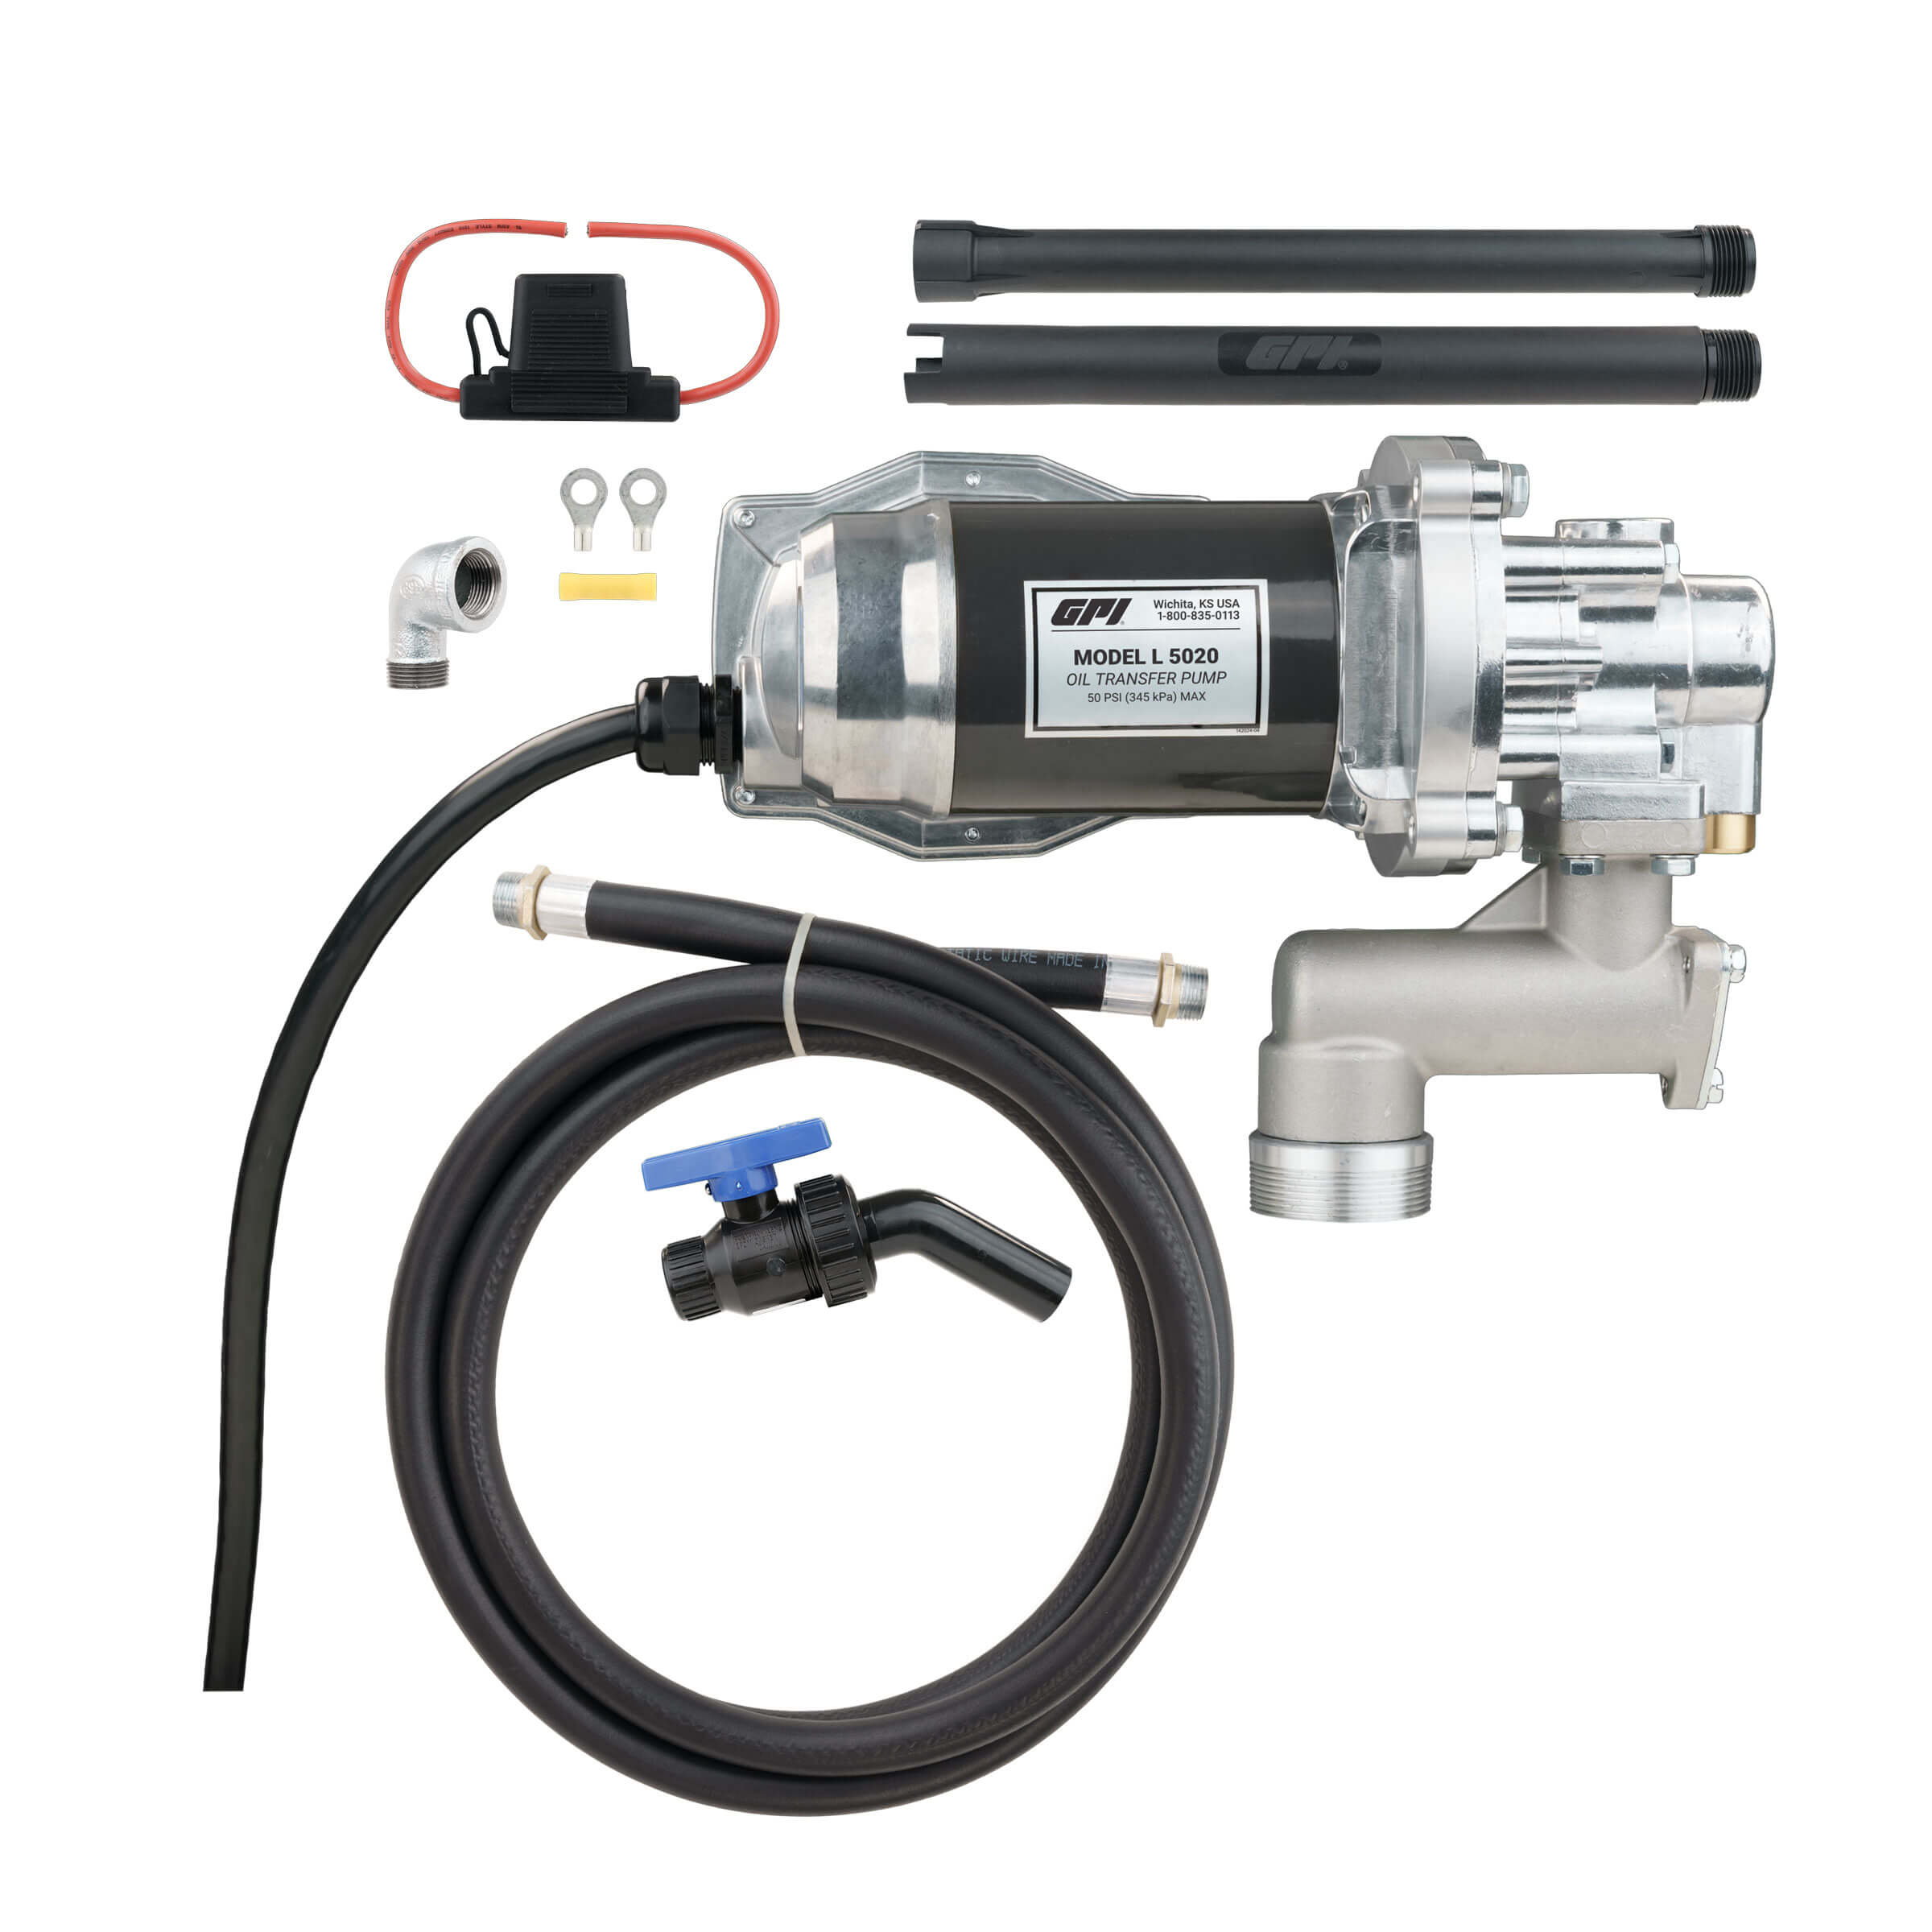 GPI L5116 Oil Transfer Pump - 1/2 HP